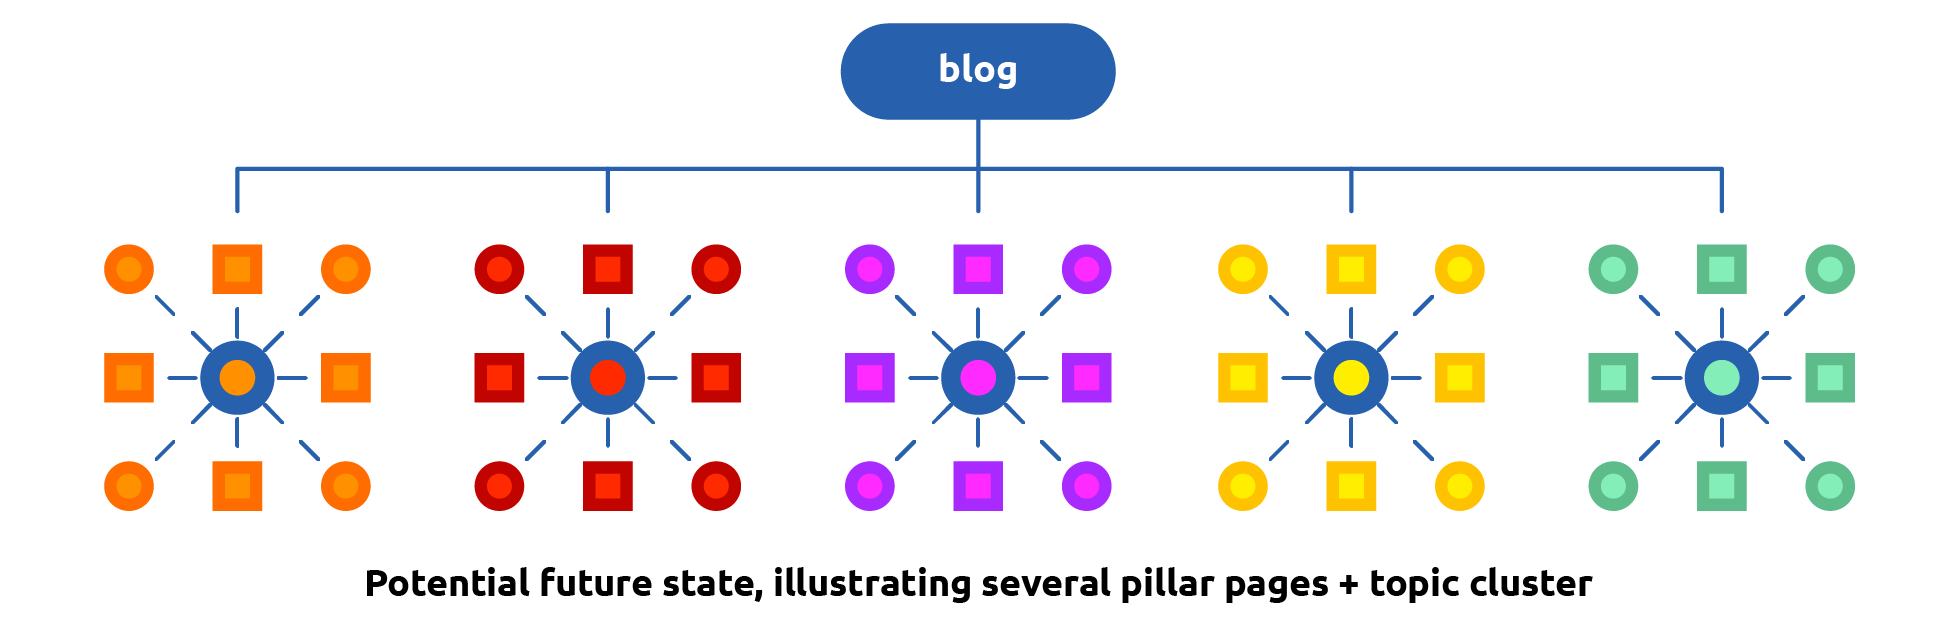 Blog_Topic_Cluster_V2_Comport.com.png